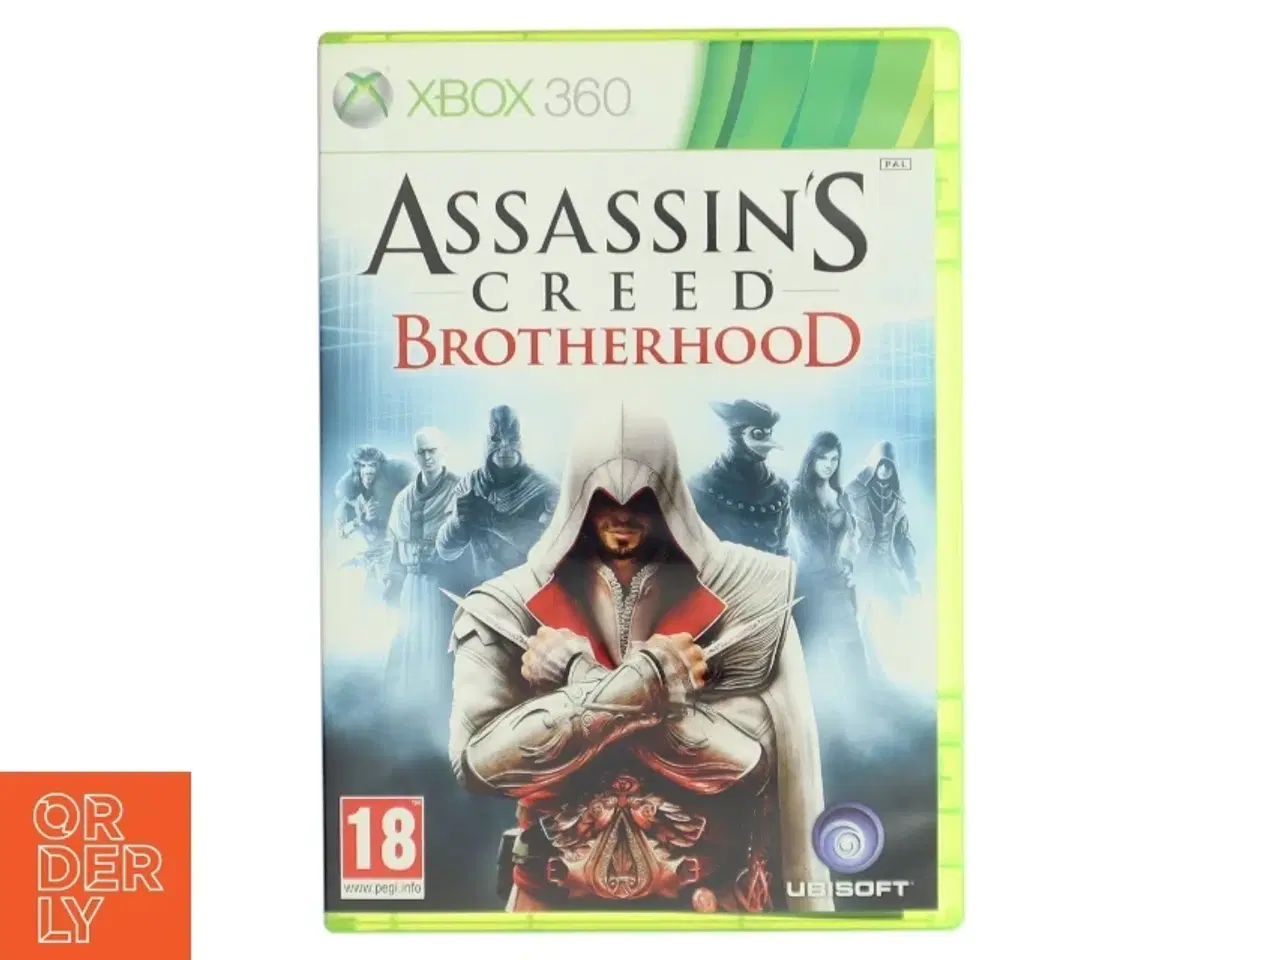 Billede 1 - Assassin's Creed Brotherhood til Xbox 360 fra Ubisoft